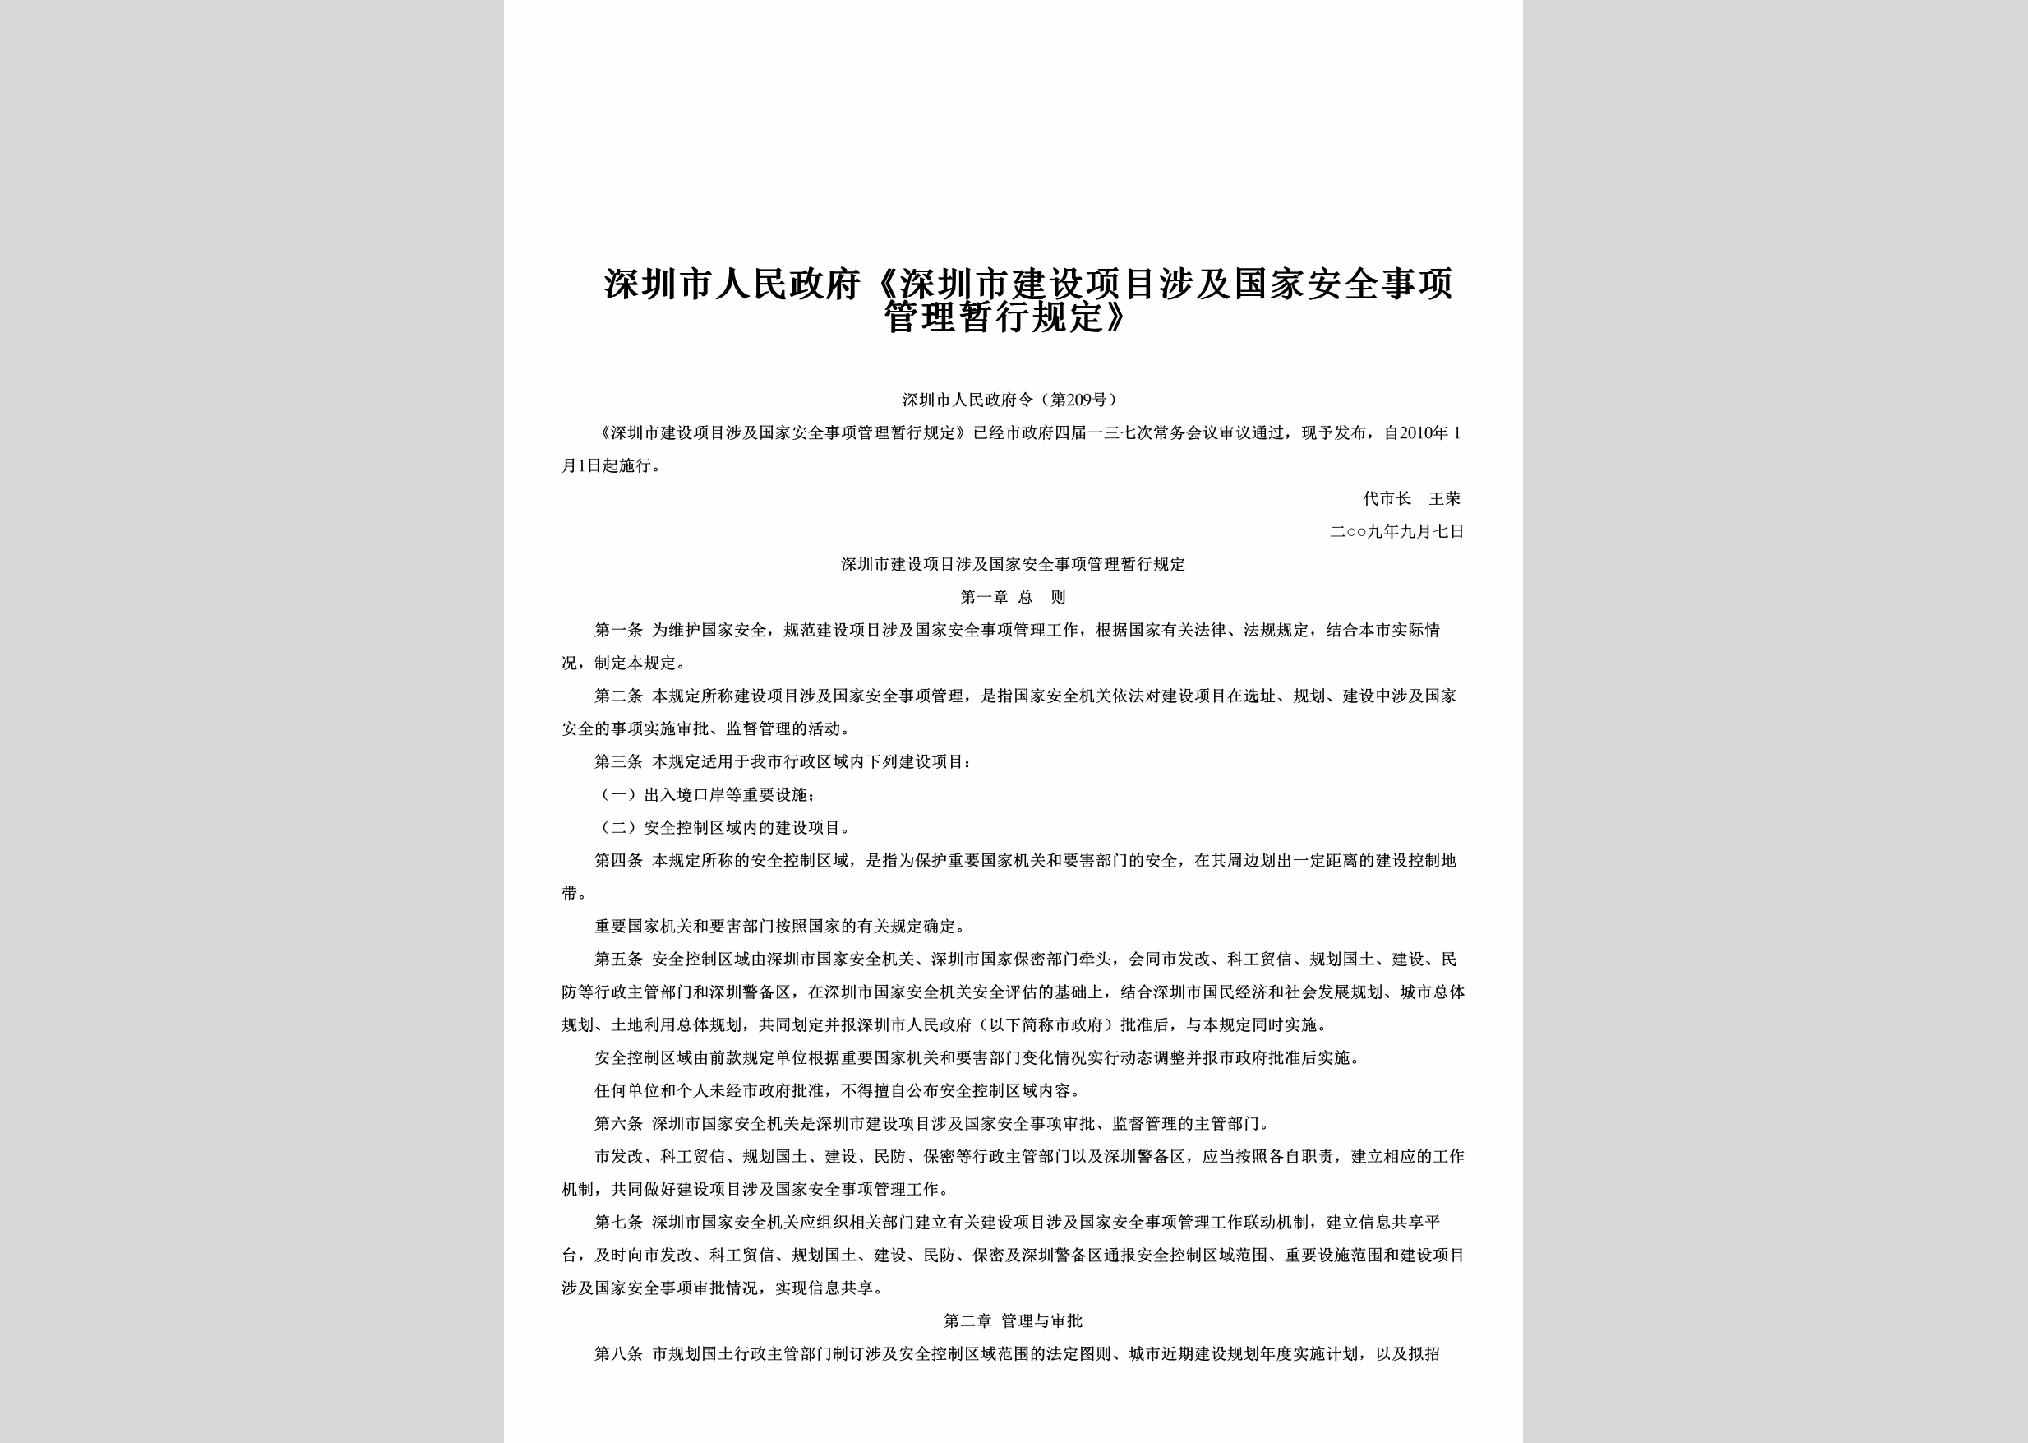 深圳市人民政府令第209号：《深圳市建设项目涉及国家安全事项管理暂行规定》